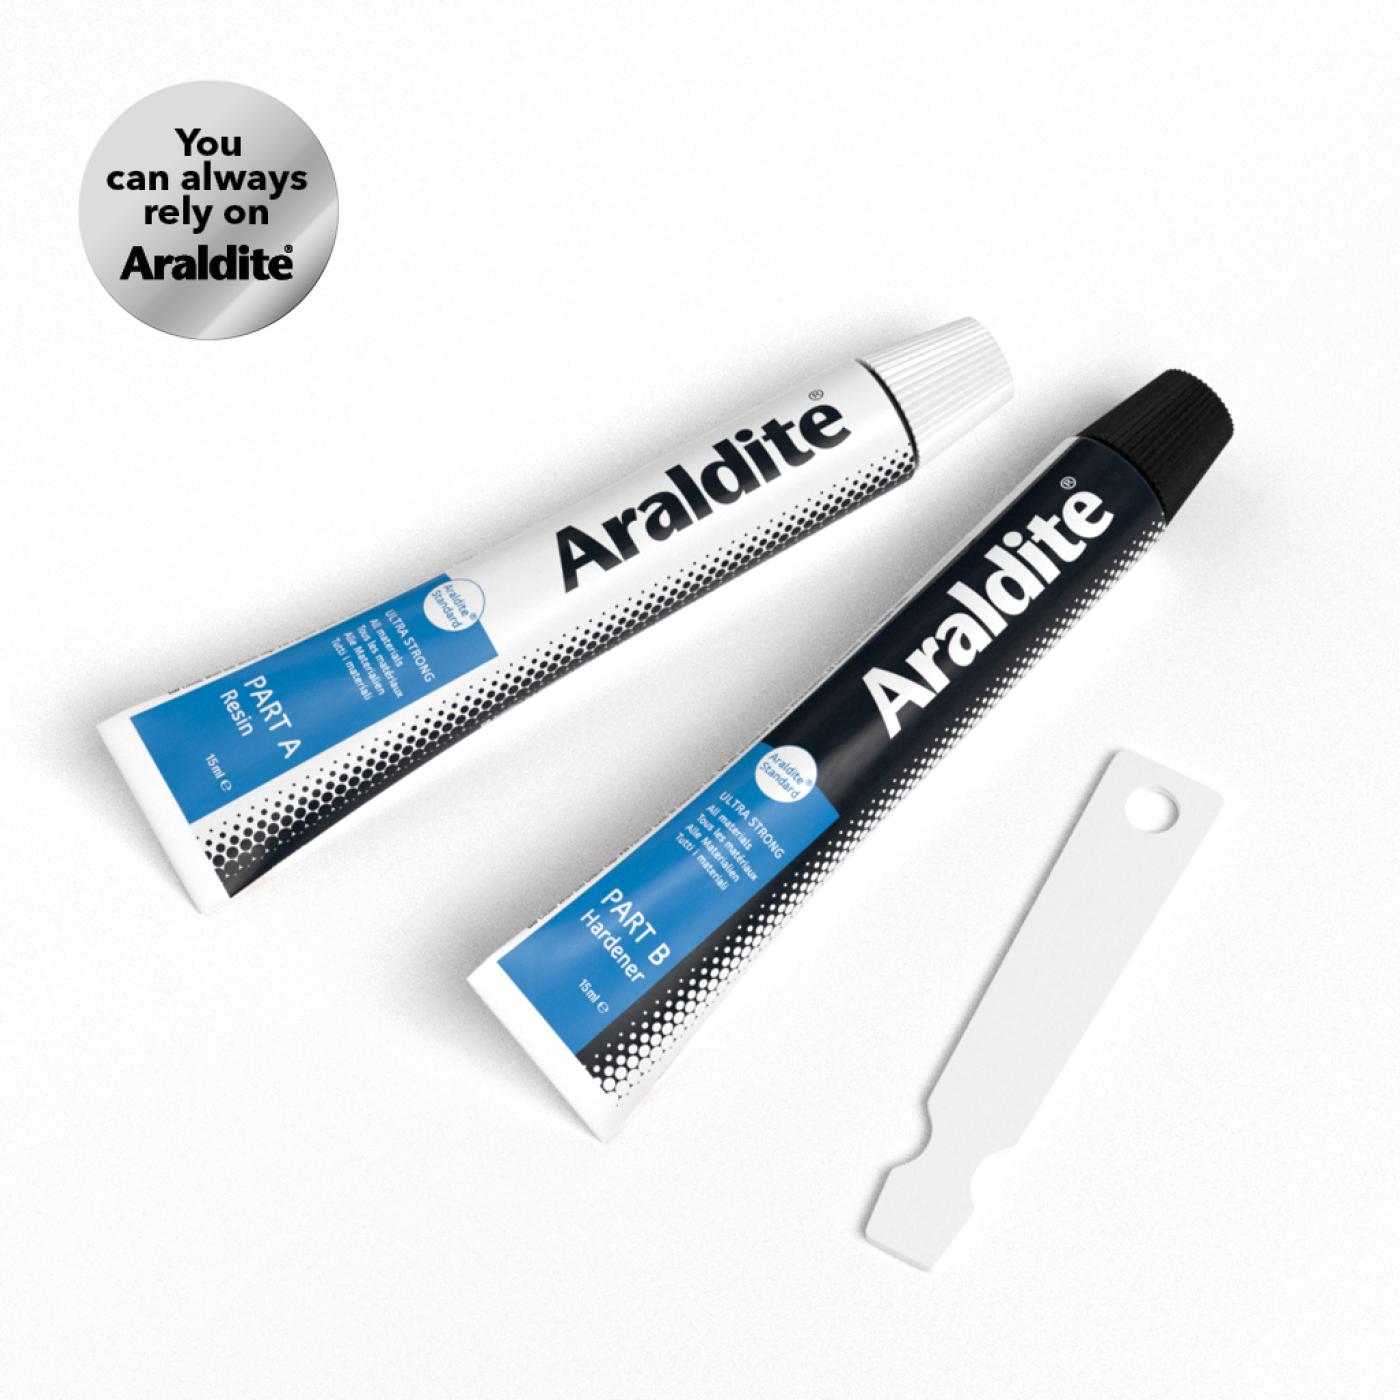 ARALDITE STANDARD (BLUE), Adhesives & Glues